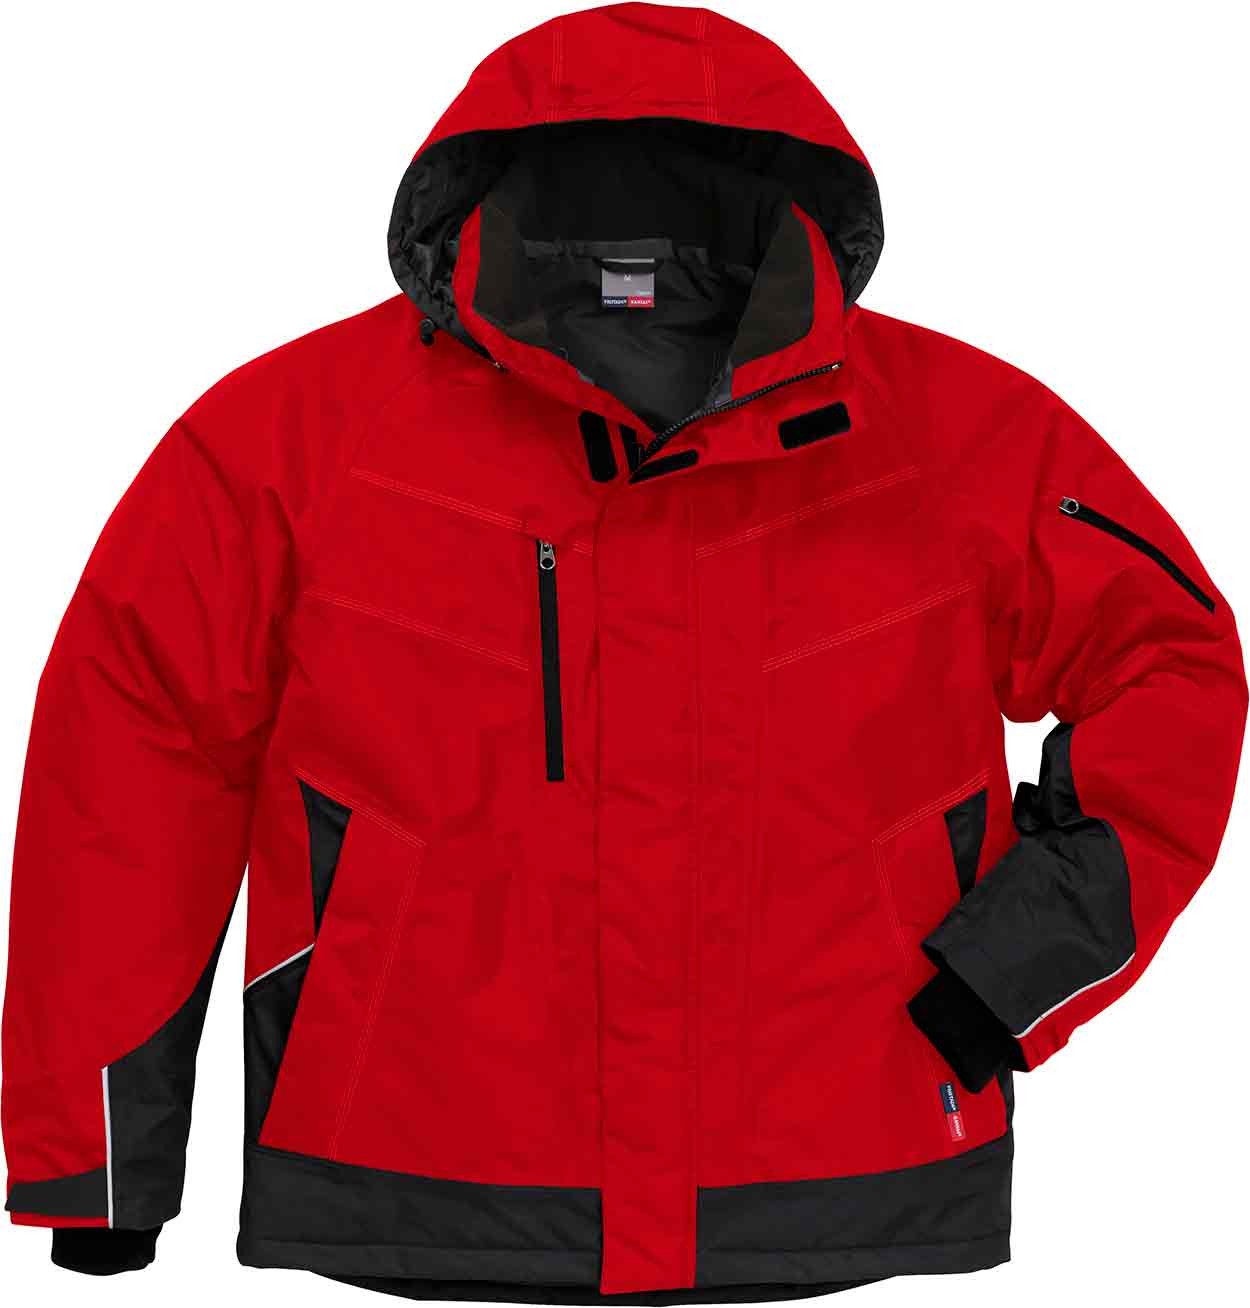 Fristads Airtech Winter Jacket 4410 Gtt - Workwear Jackets - Workwear -  Best Workwear